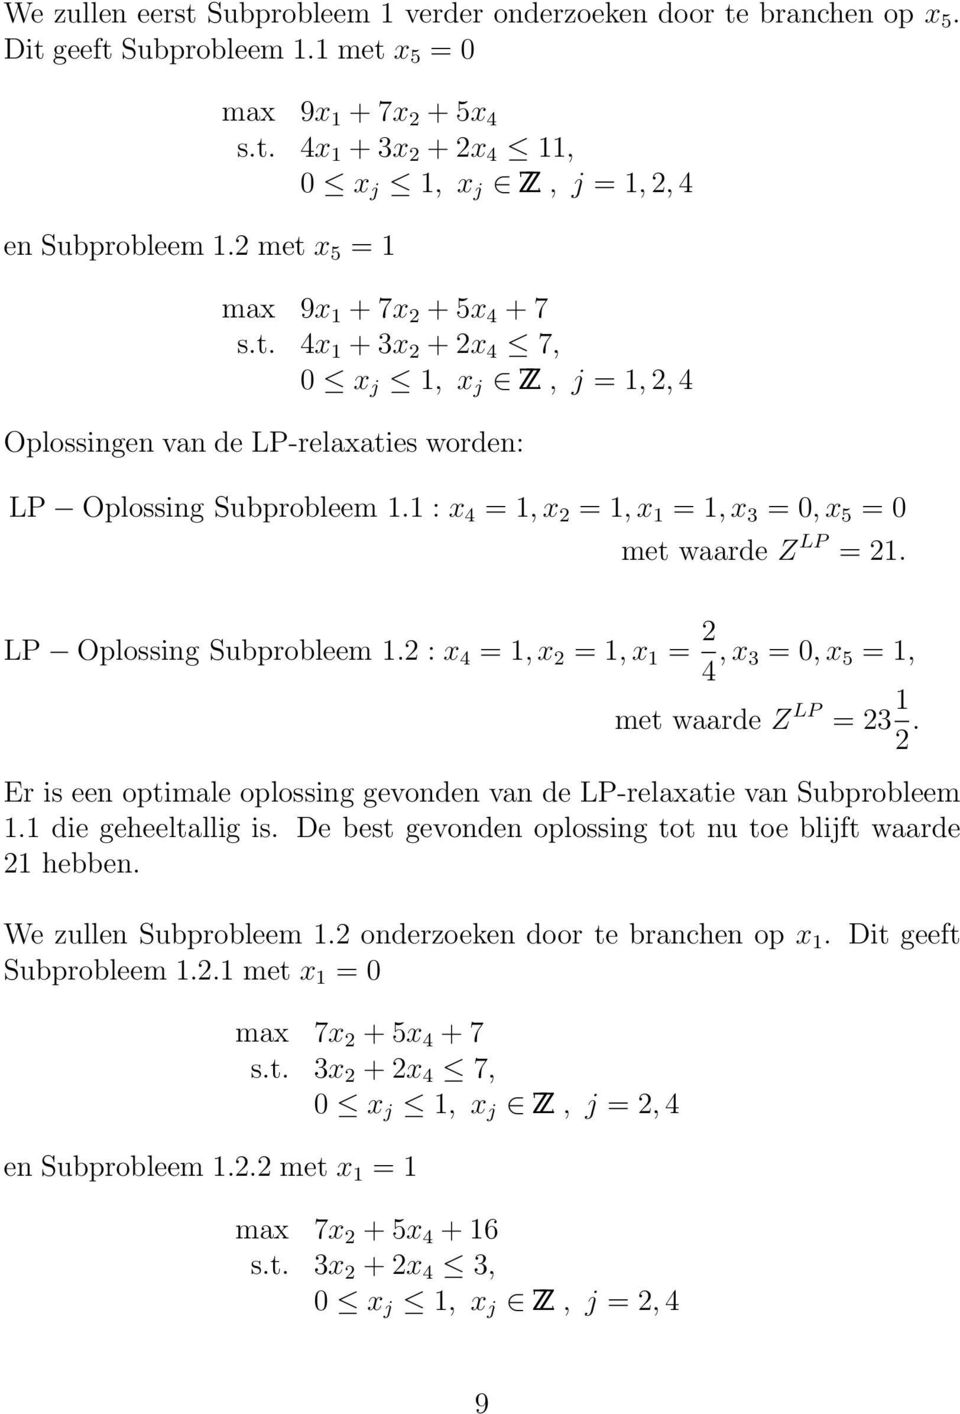 LP Oplossing Subprobleem 1.2 : x 4 = 1, x 2 = 1, x 1 = 2 4, x 3 = 0, x 5 = 1, met waarde Z LP = 23 1 2. Er is een optimale oplossing gevonden van de LP-relaxatie van Subprobleem 1.